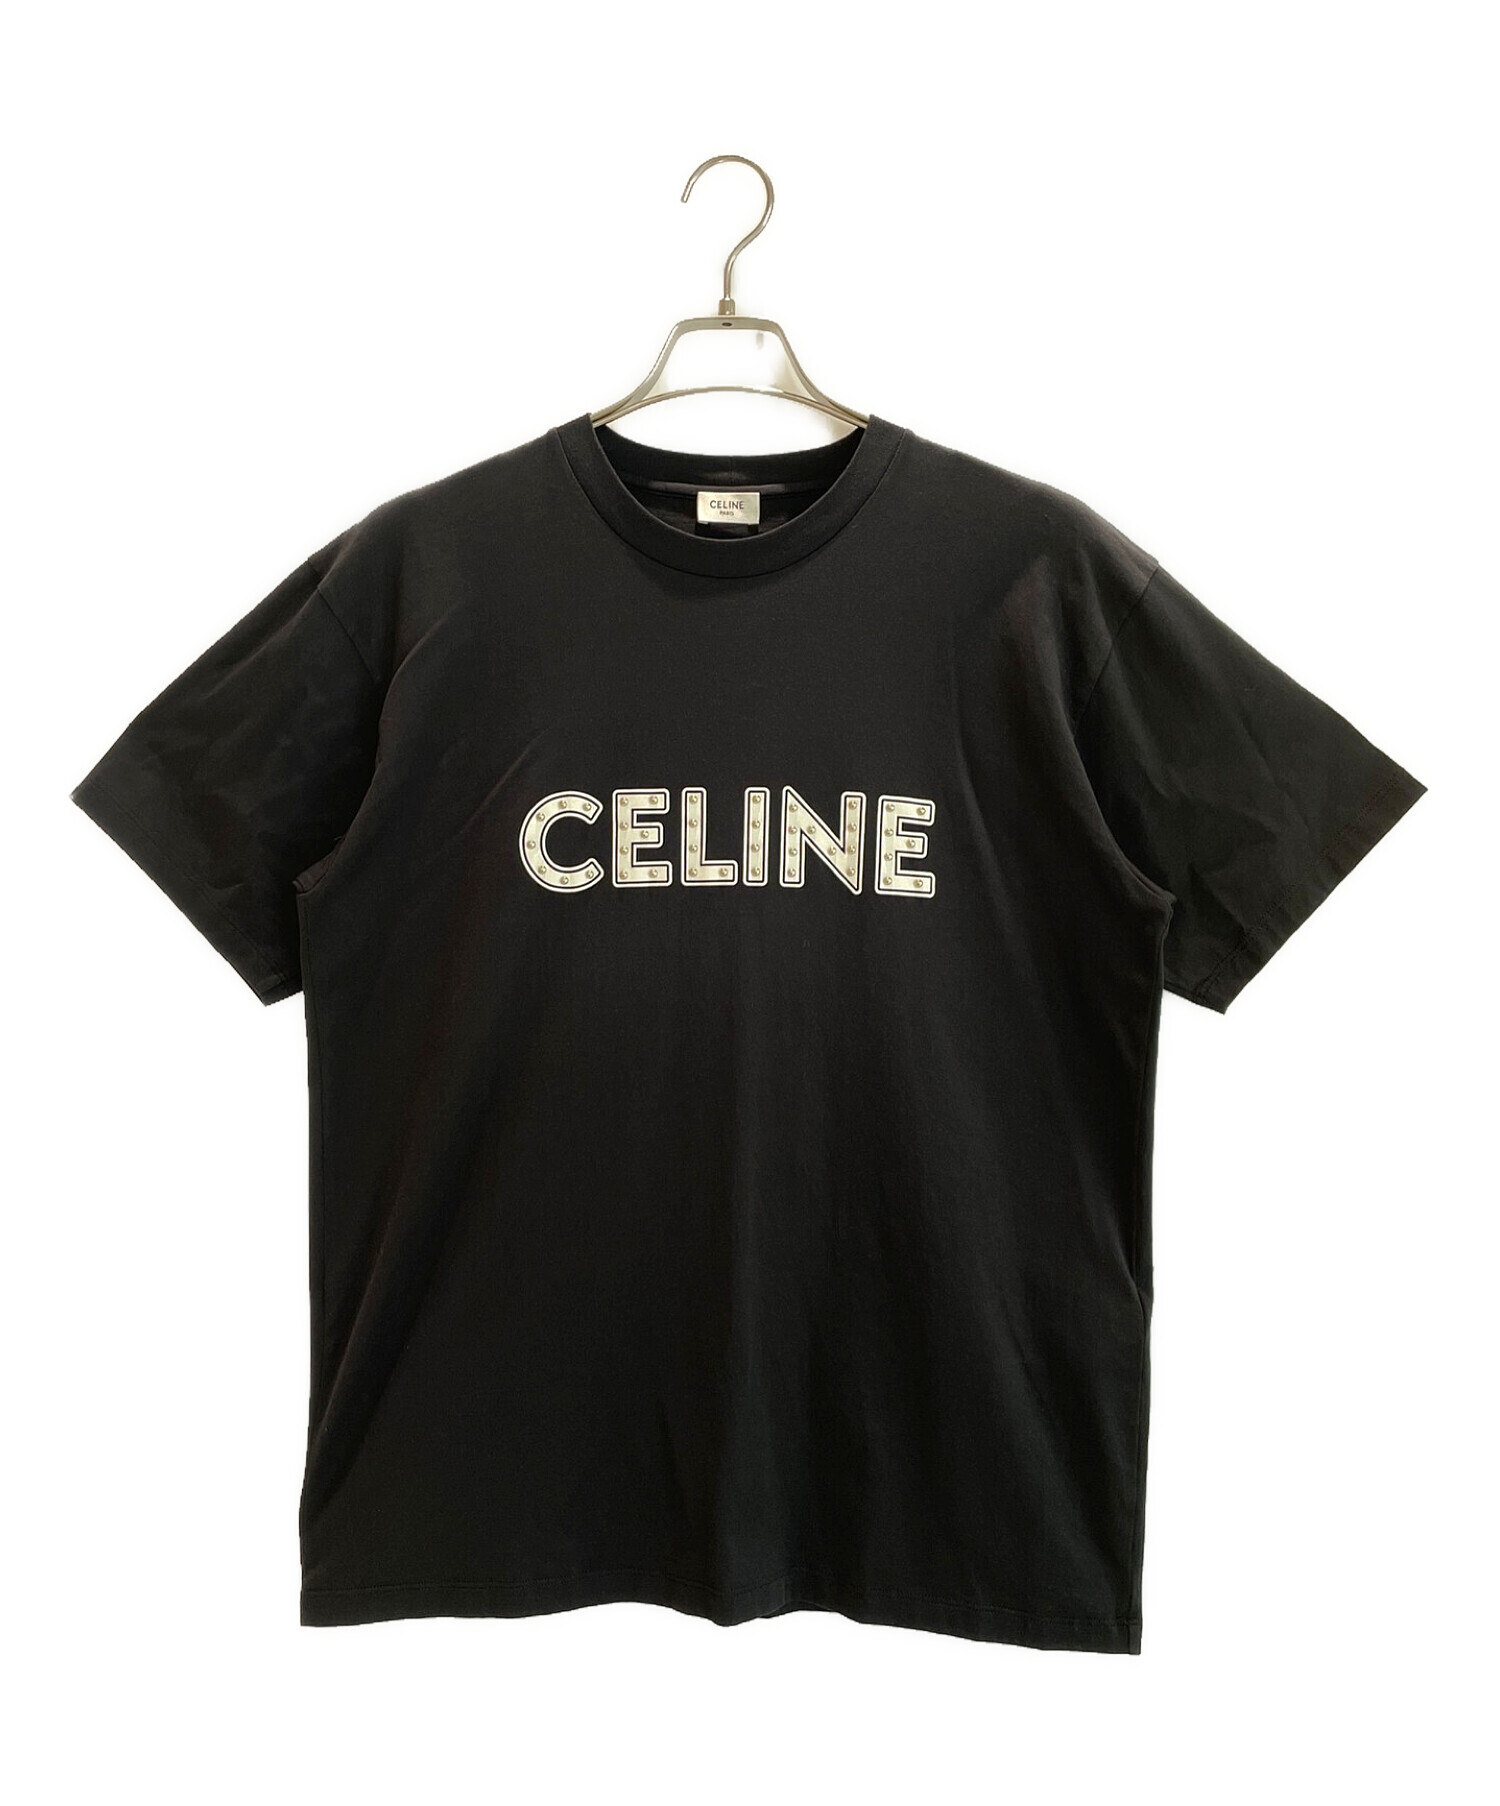 CELINE セリーヌ スタッズ ロゴ Tシャツ ブラック~Sサイズ